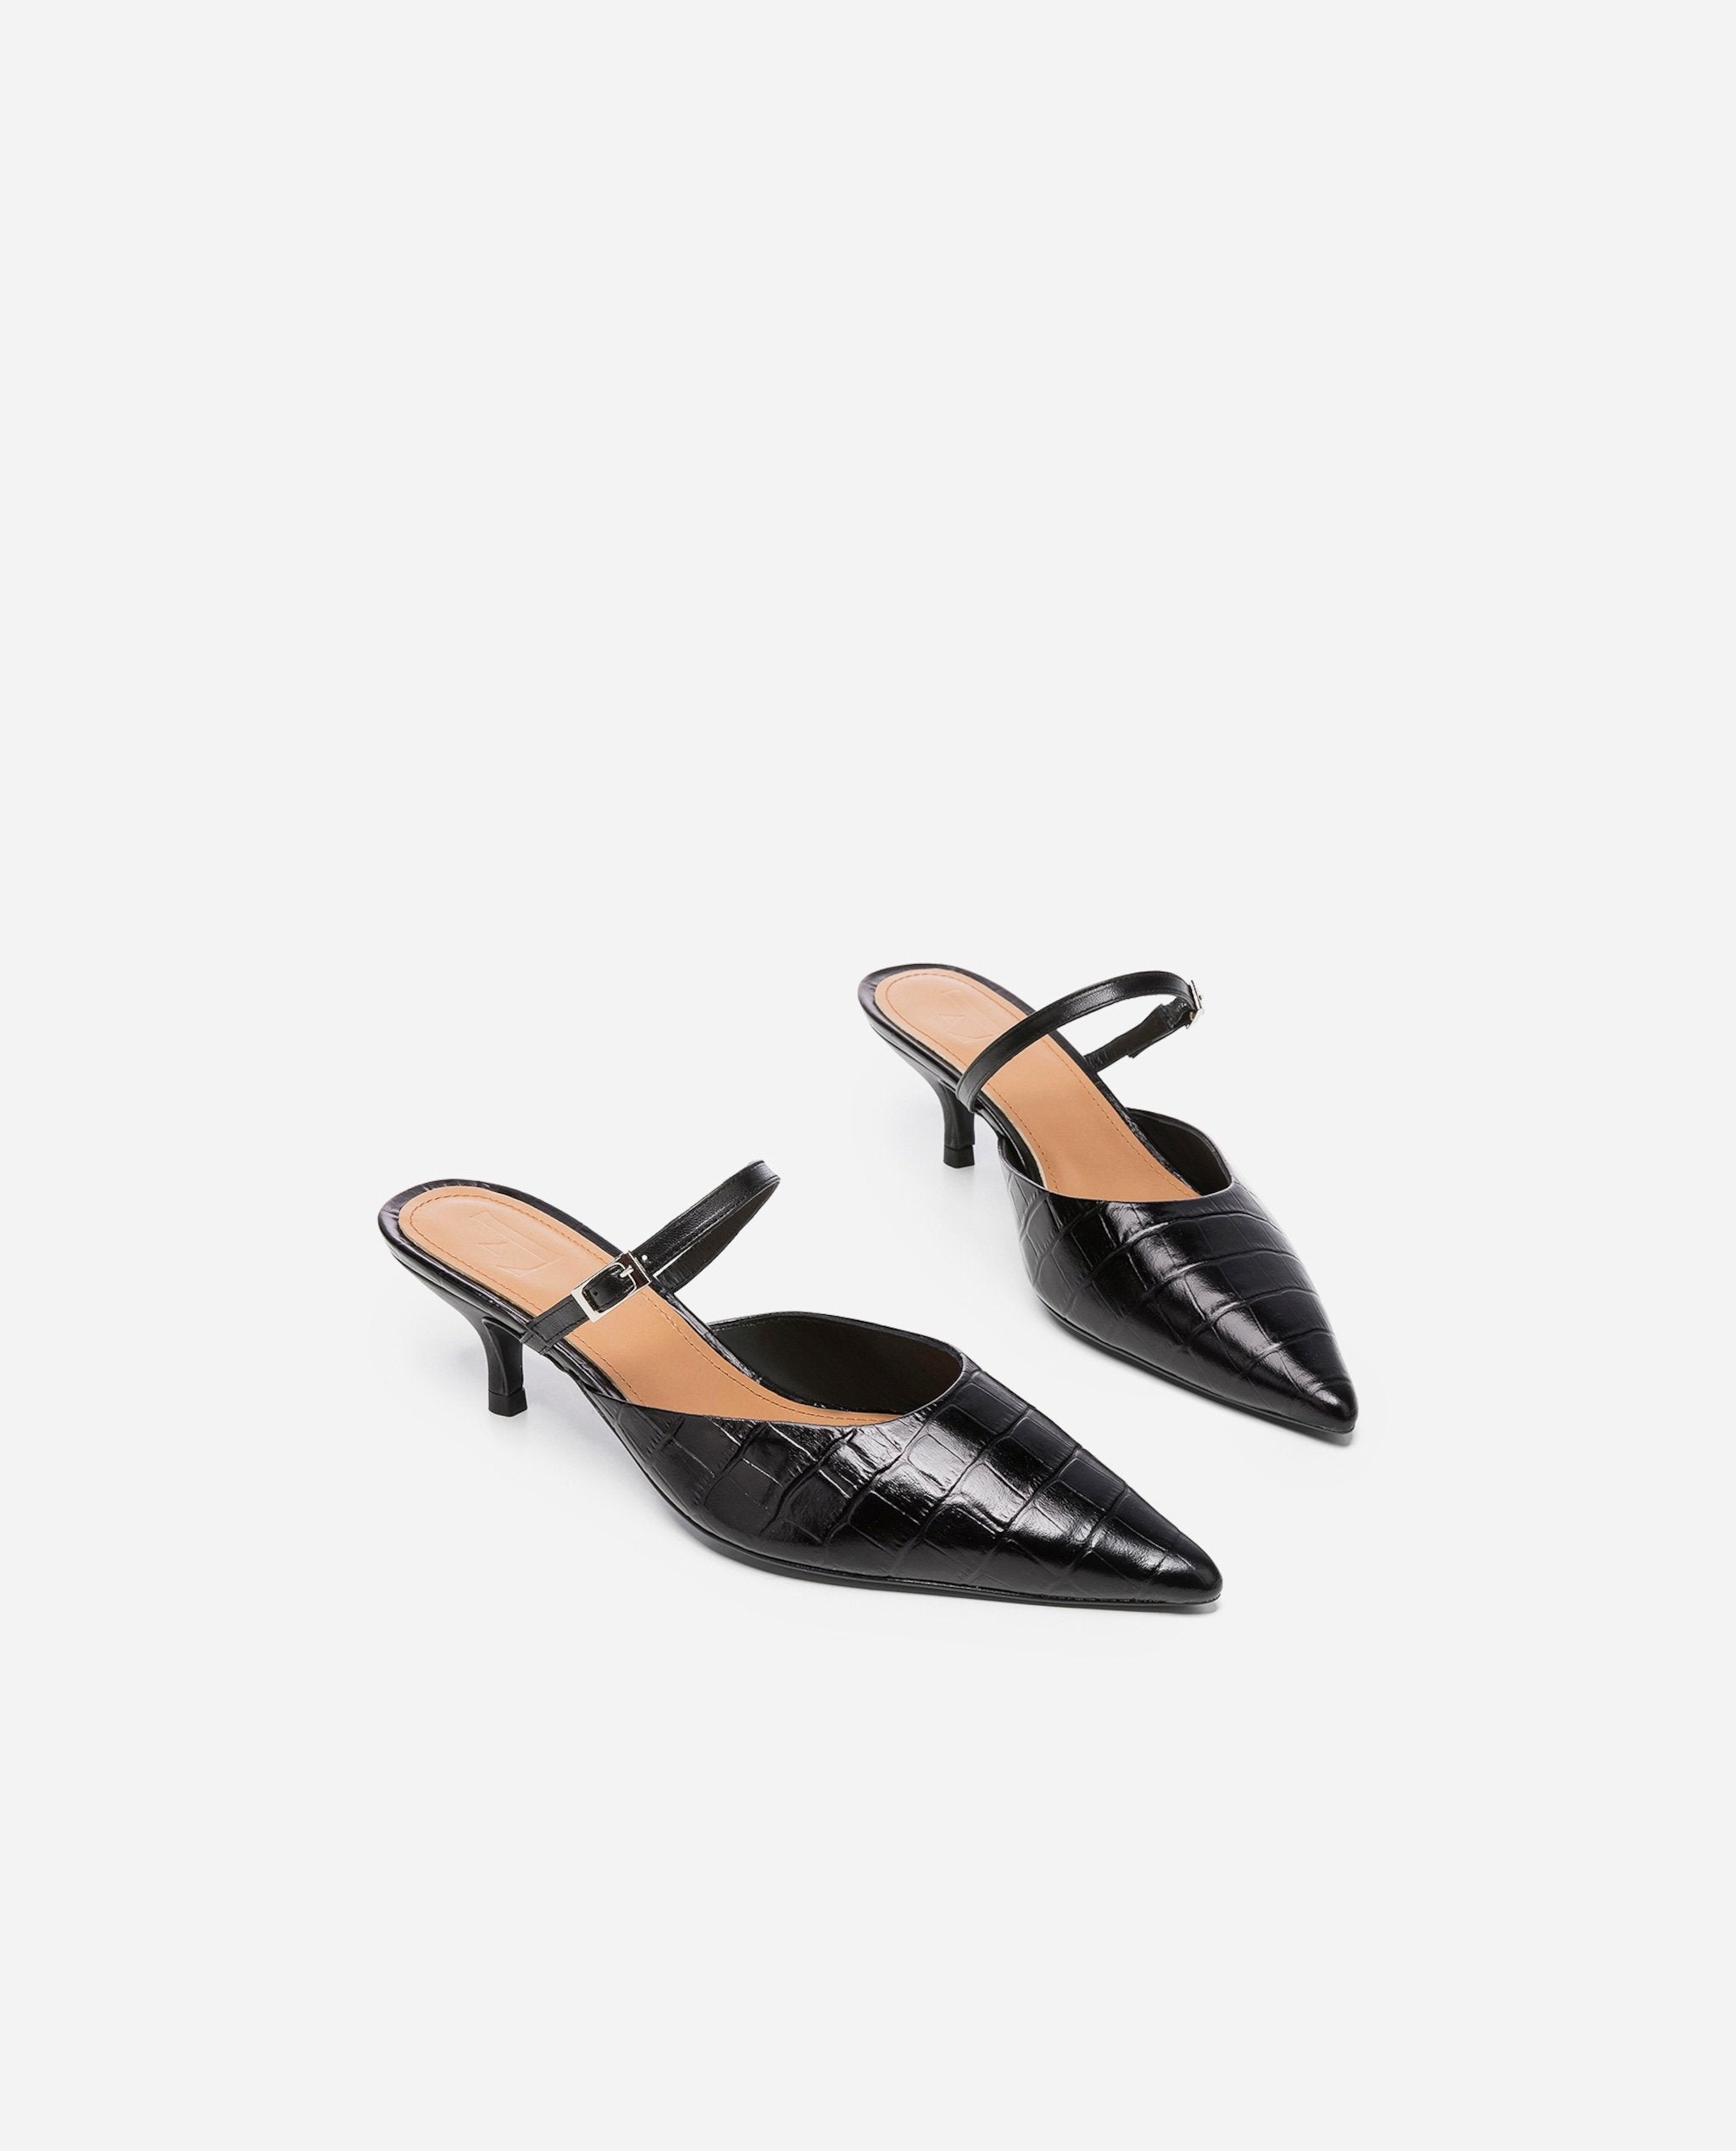 Hilda Croco Leather Black Mule Shoes Heels 20010411817-001 - 2